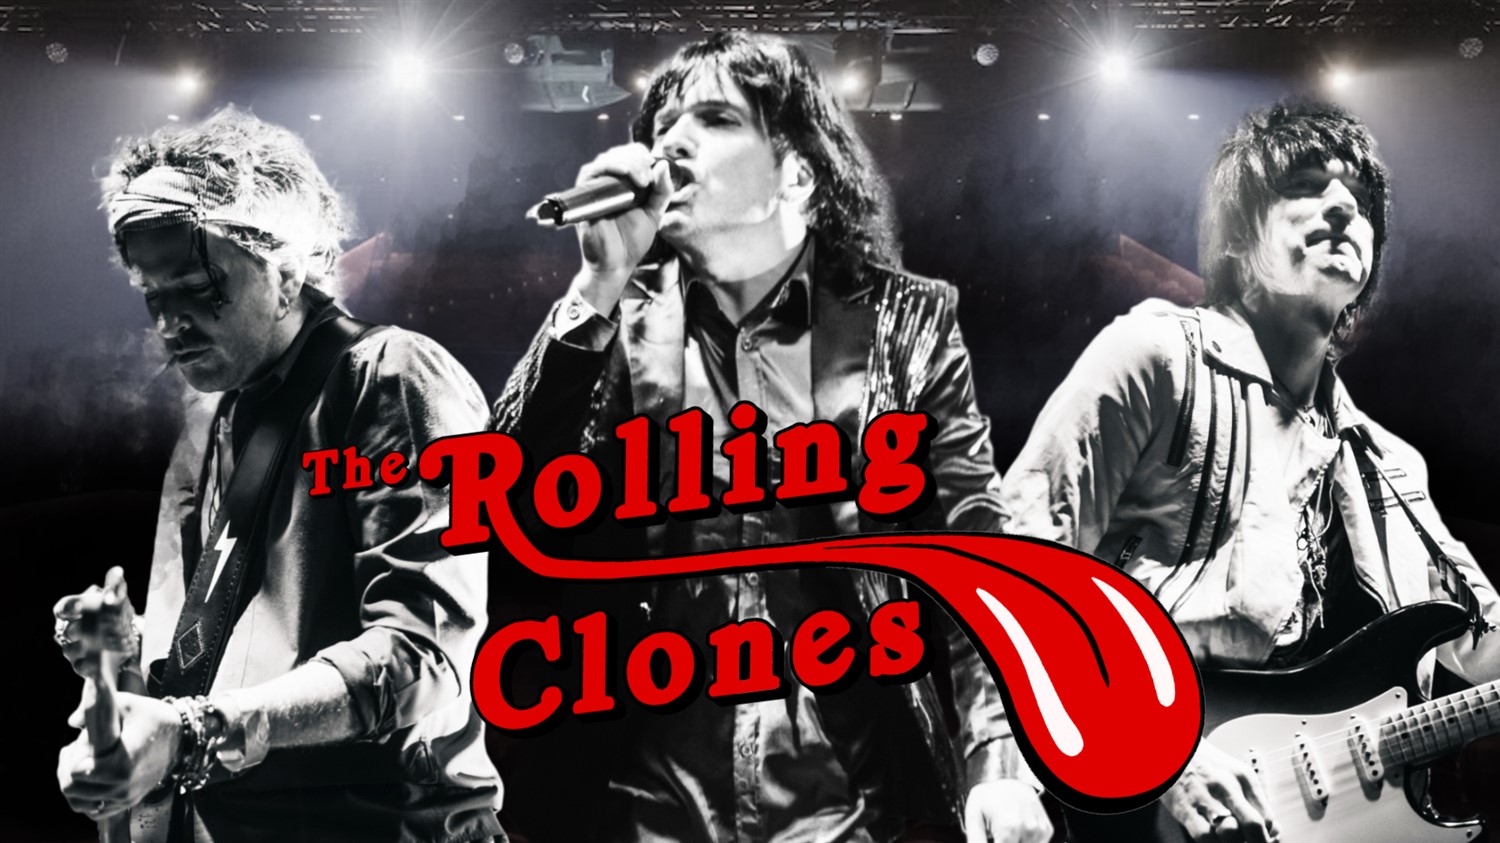 The Rolling Clones After Party and DJ on juin 21, 19:30@Standard capacity - Choisissez un siège,Achetez des billets et obtenez des informations surSutton Coldfield Town Hall 